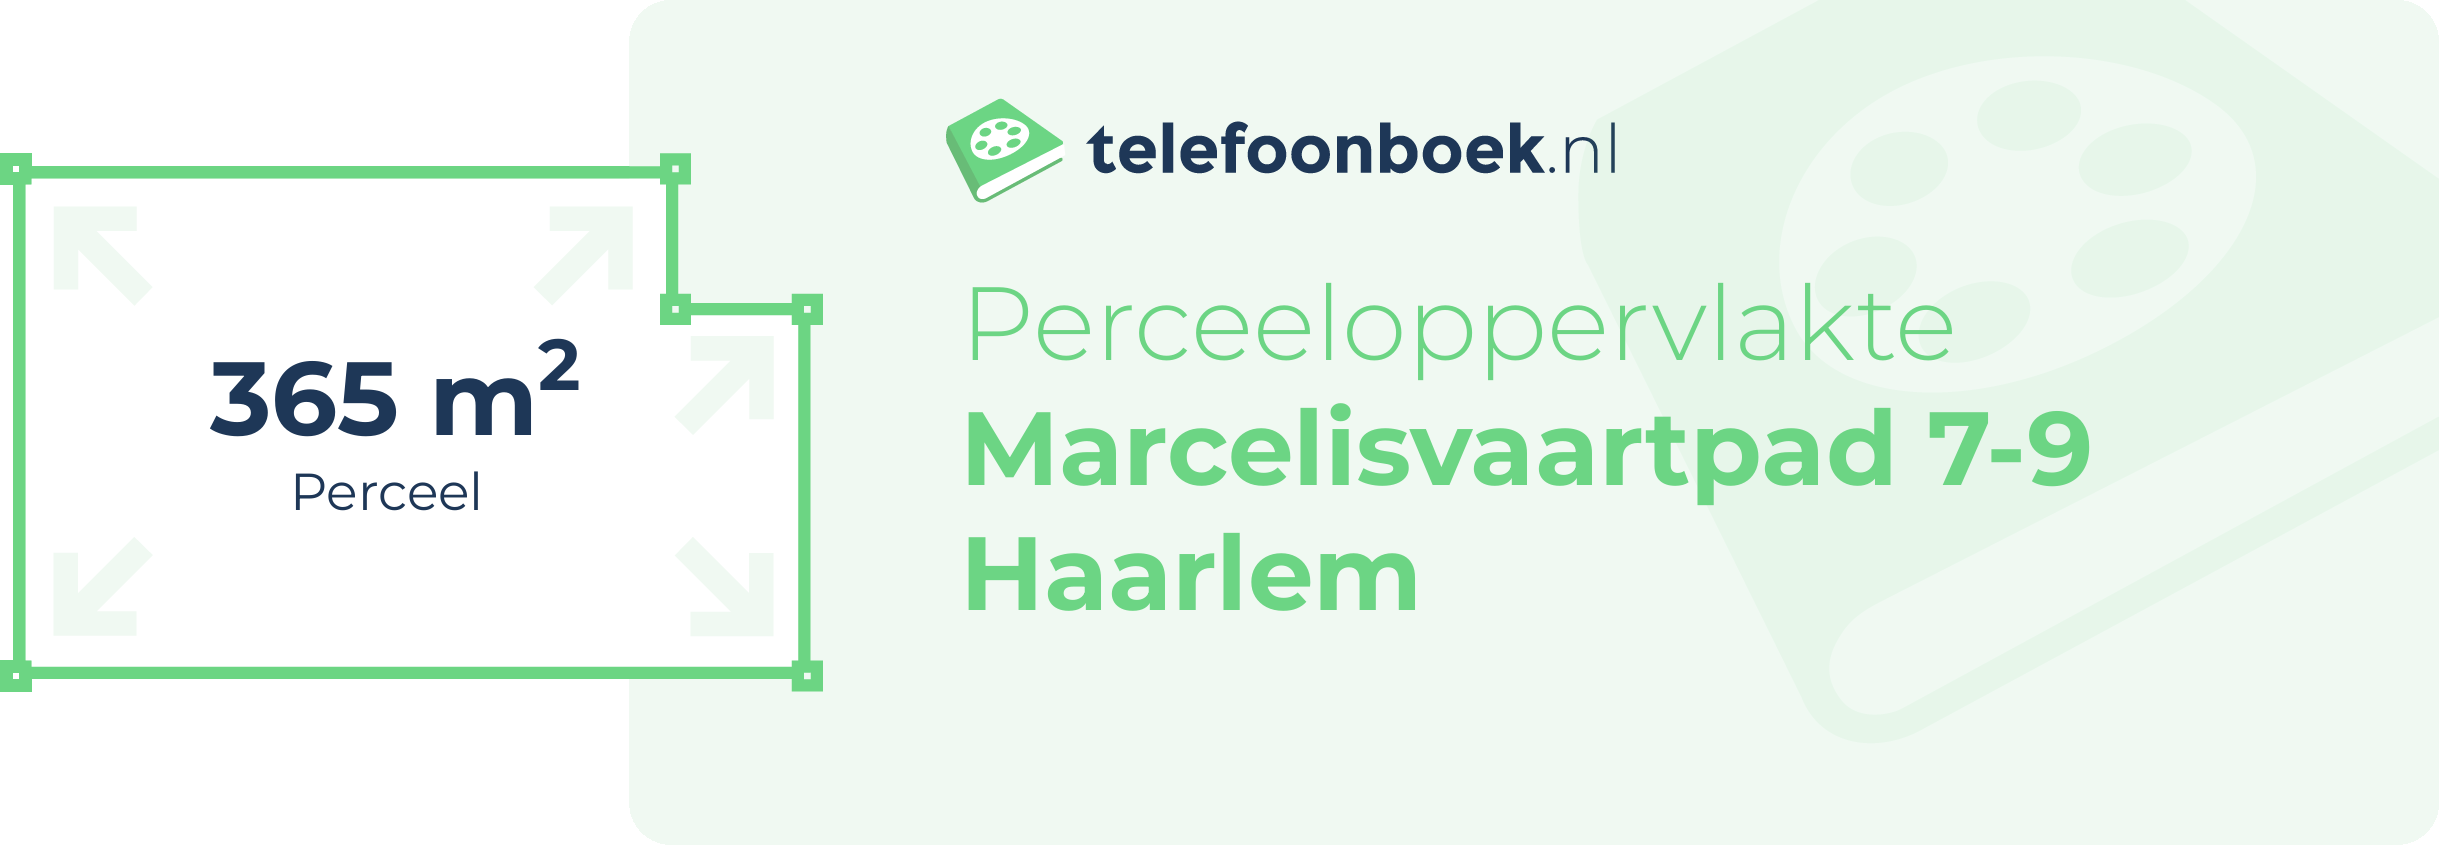 Perceeloppervlakte Marcelisvaartpad 7-9 Haarlem